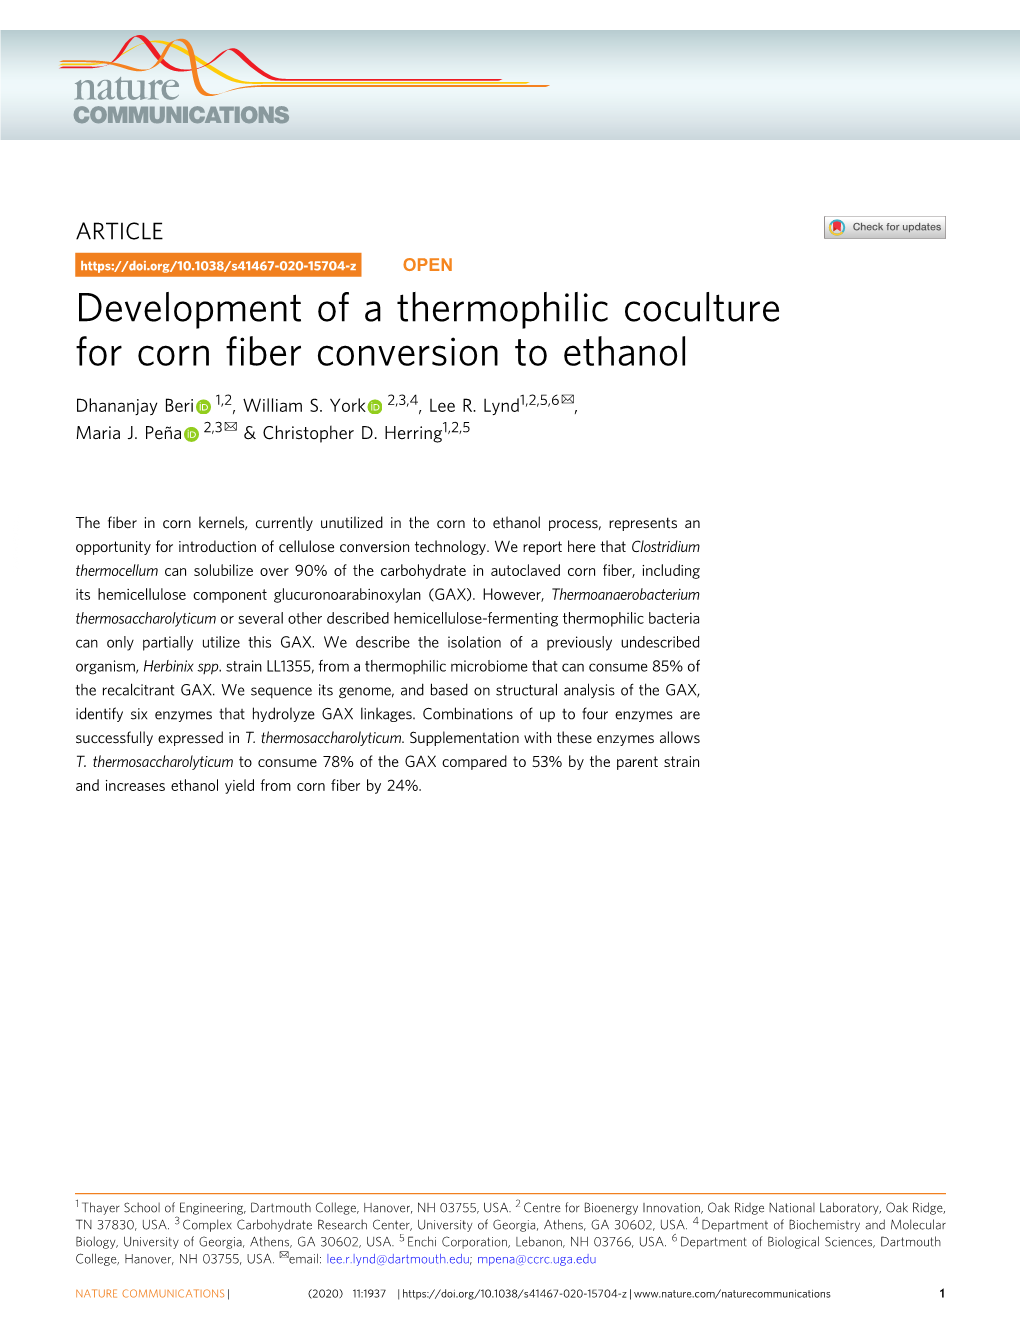 Development of a Thermophilic Coculture for Corn Fiber Conversion